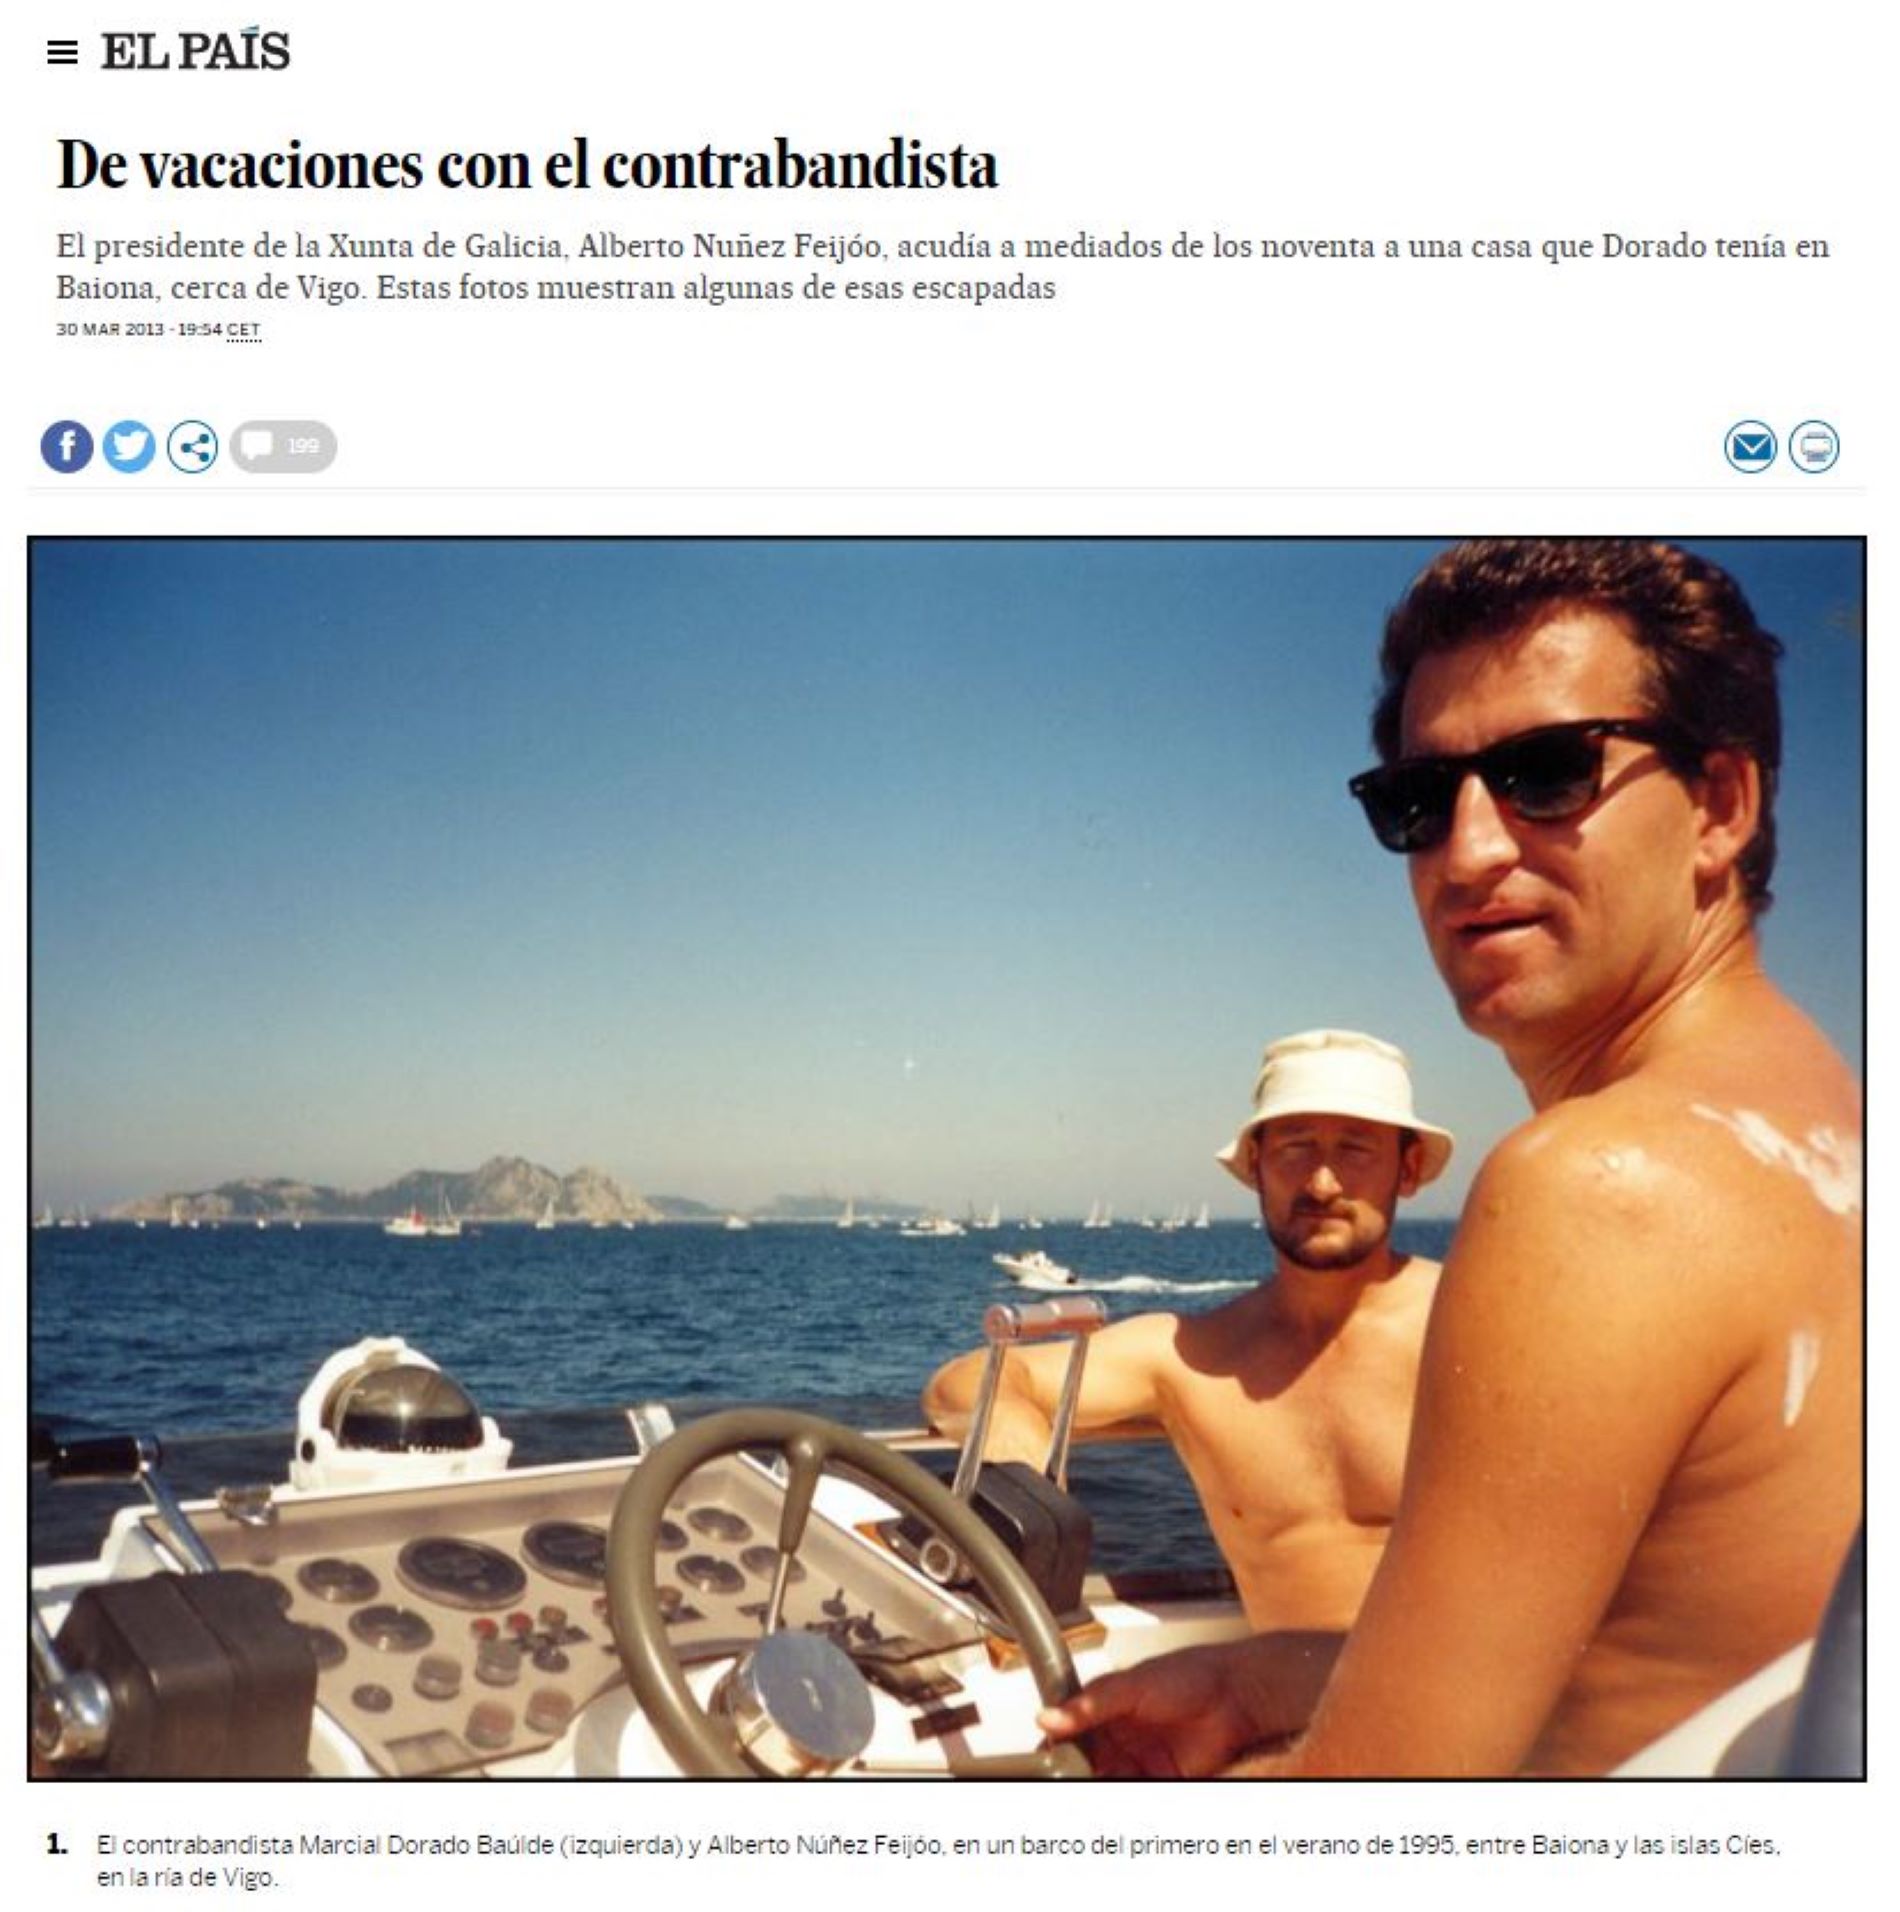 Alberto Núñez Feijóo amb un narcotraficant, en un reportatge d'El País